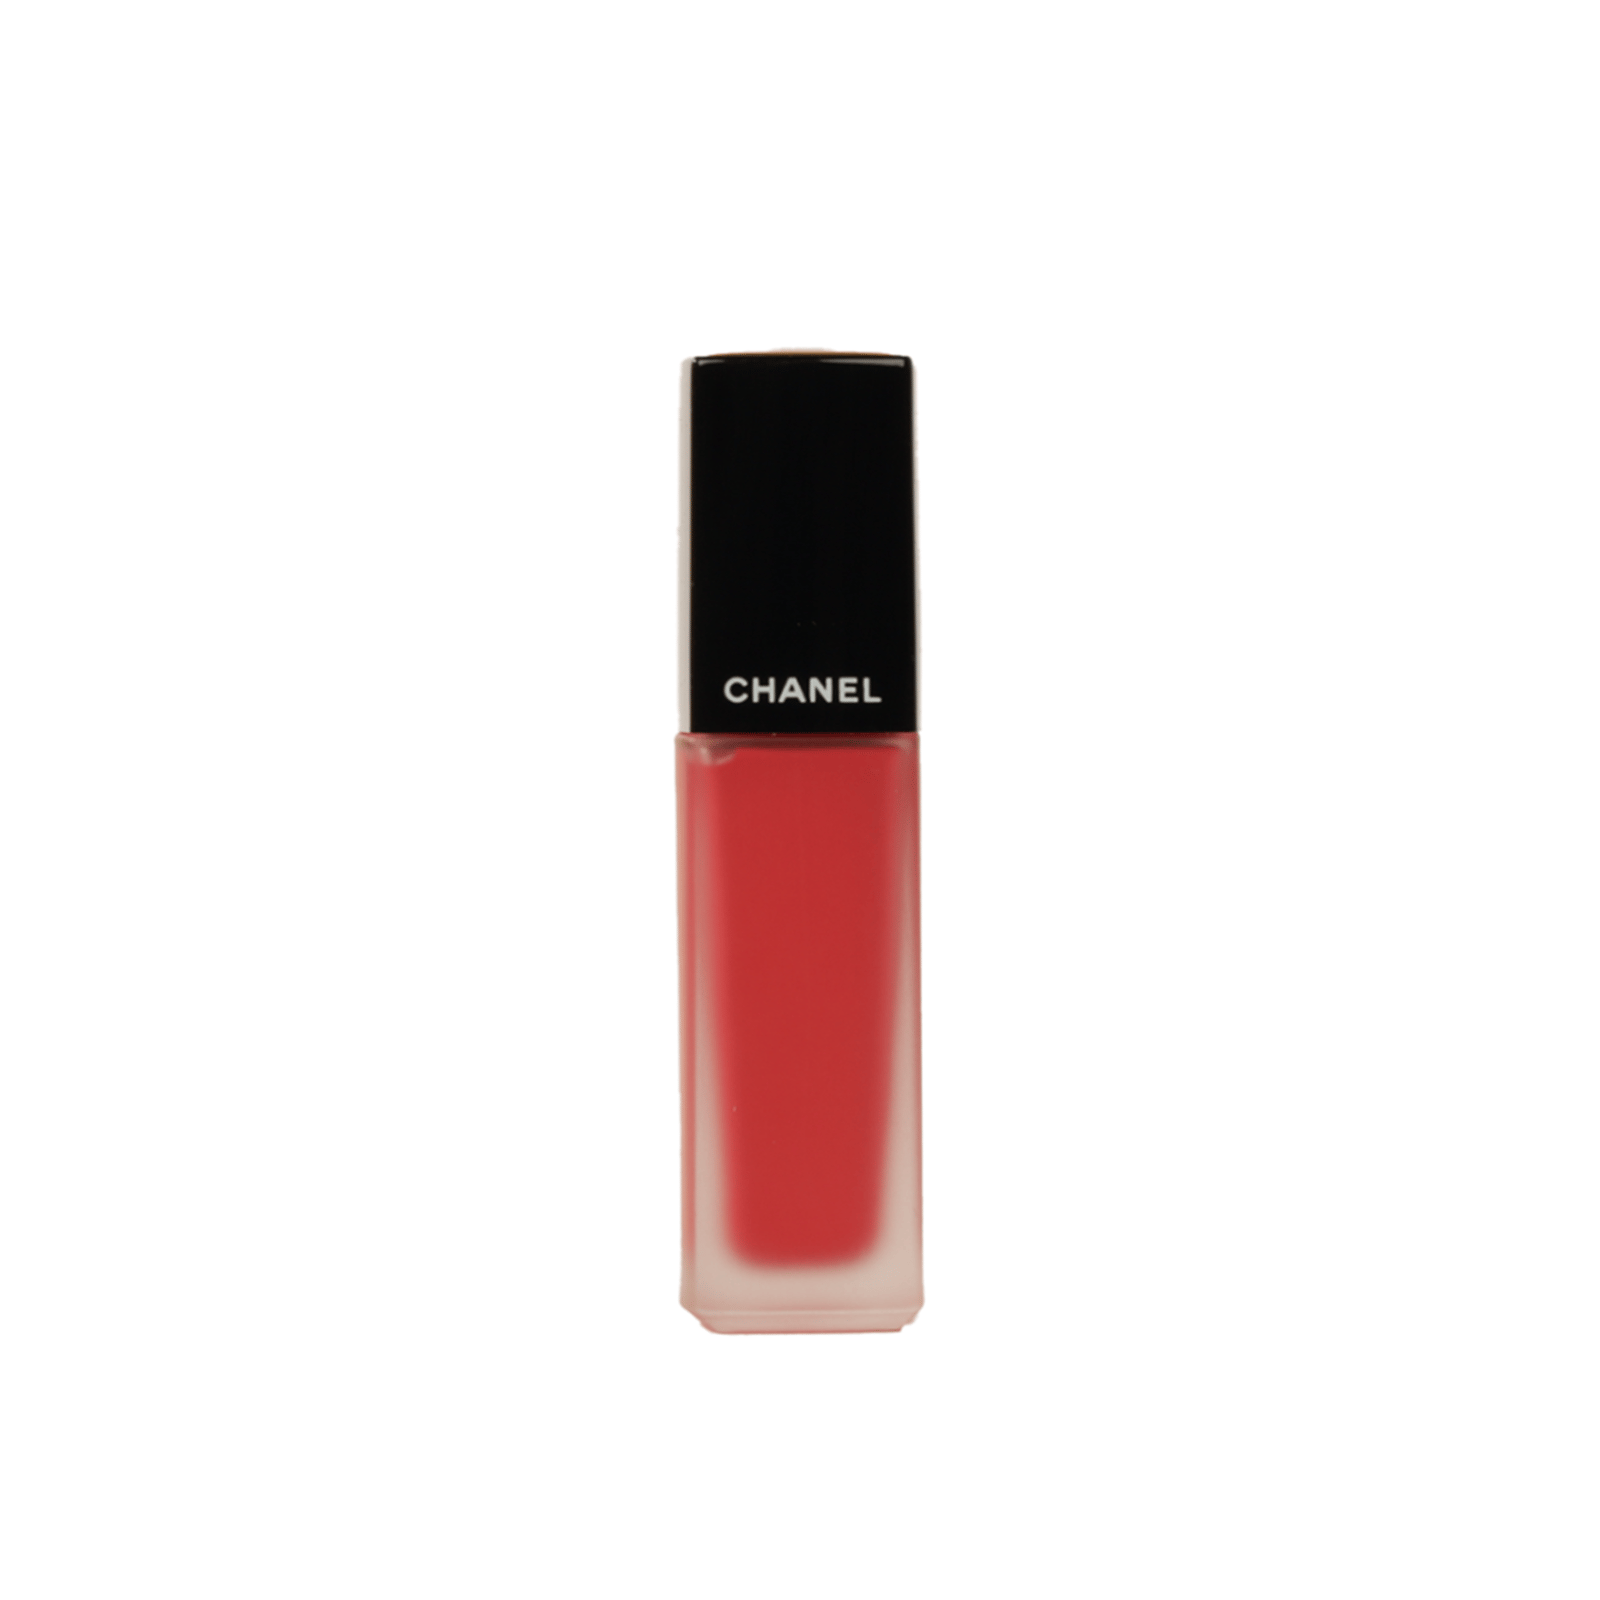 CHANEL Rouge Allure Ink Matte Liquid Lip Colour 146 Séduisant 6ml (0.20 fl oz)